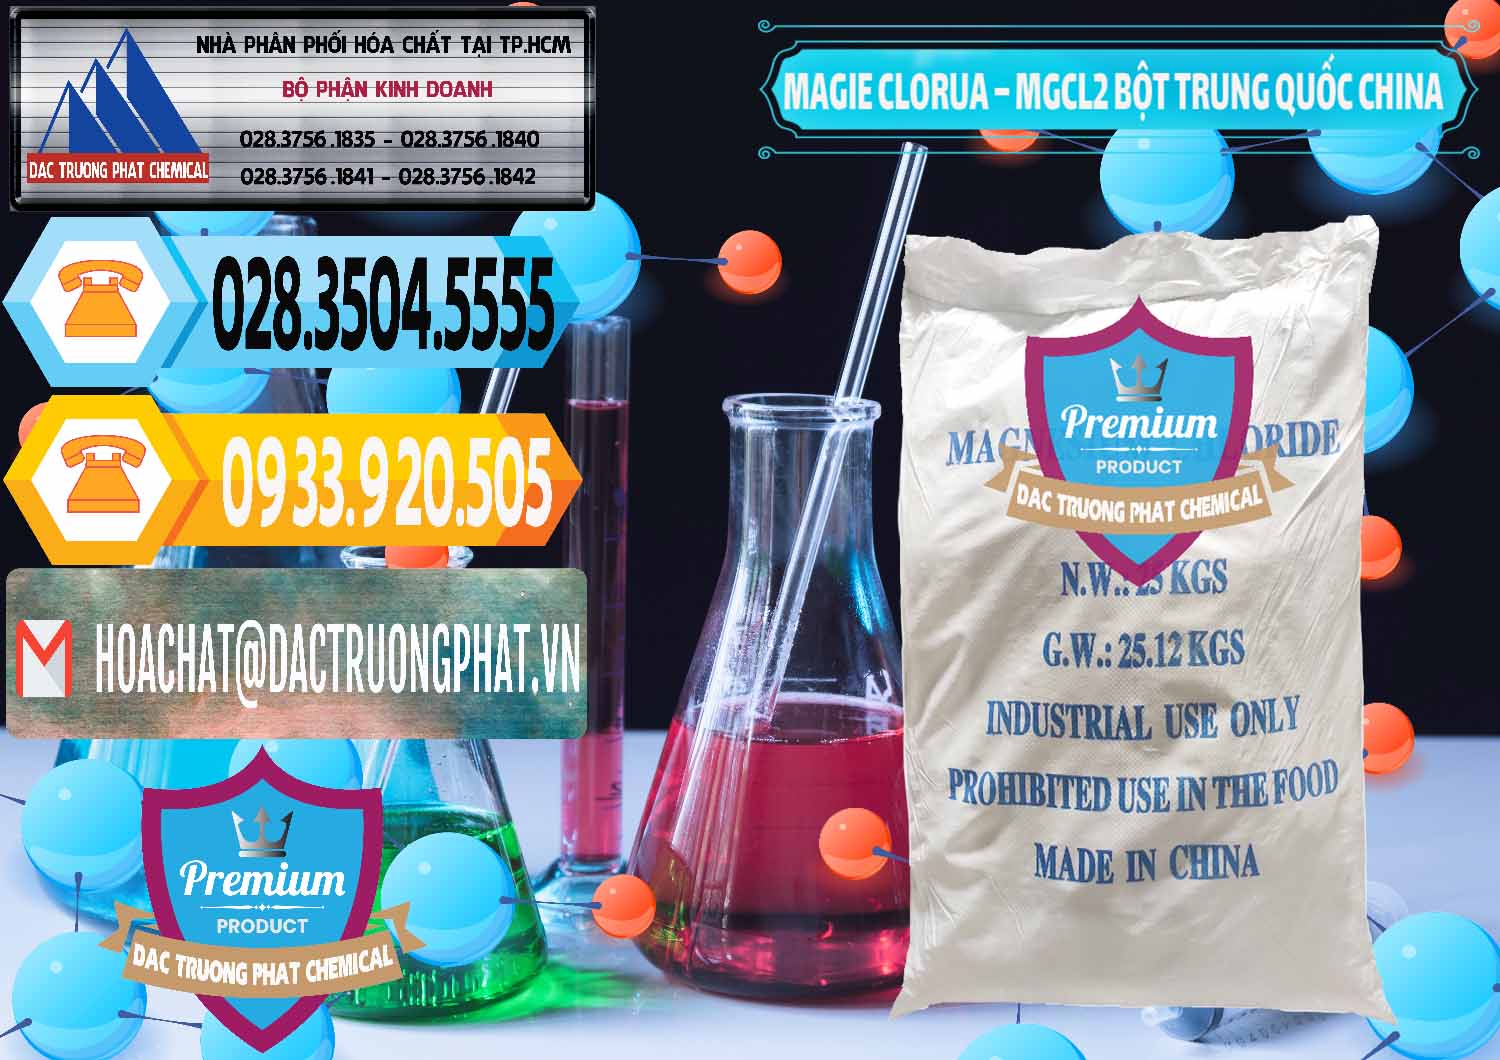 Công ty cung ứng & bán Magie Clorua – MGCL2 96% Dạng Bột Bao Chữ Xanh Trung Quốc China - 0207 - Chuyên phân phối ( bán ) hóa chất tại TP.HCM - hoachattayrua.net